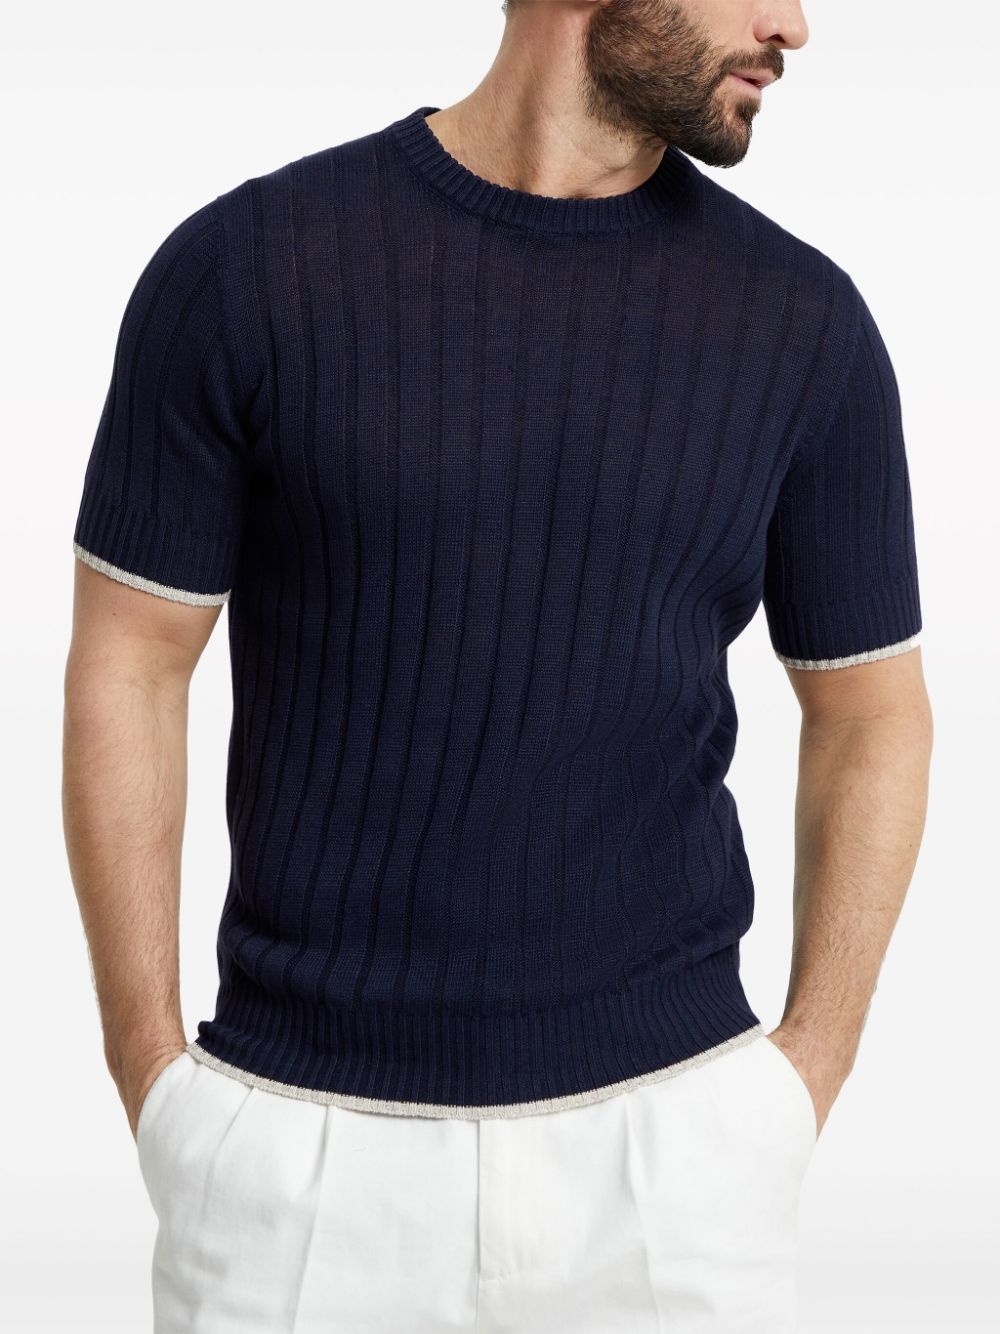 ribbed-knit short-sleeve jumper - 3